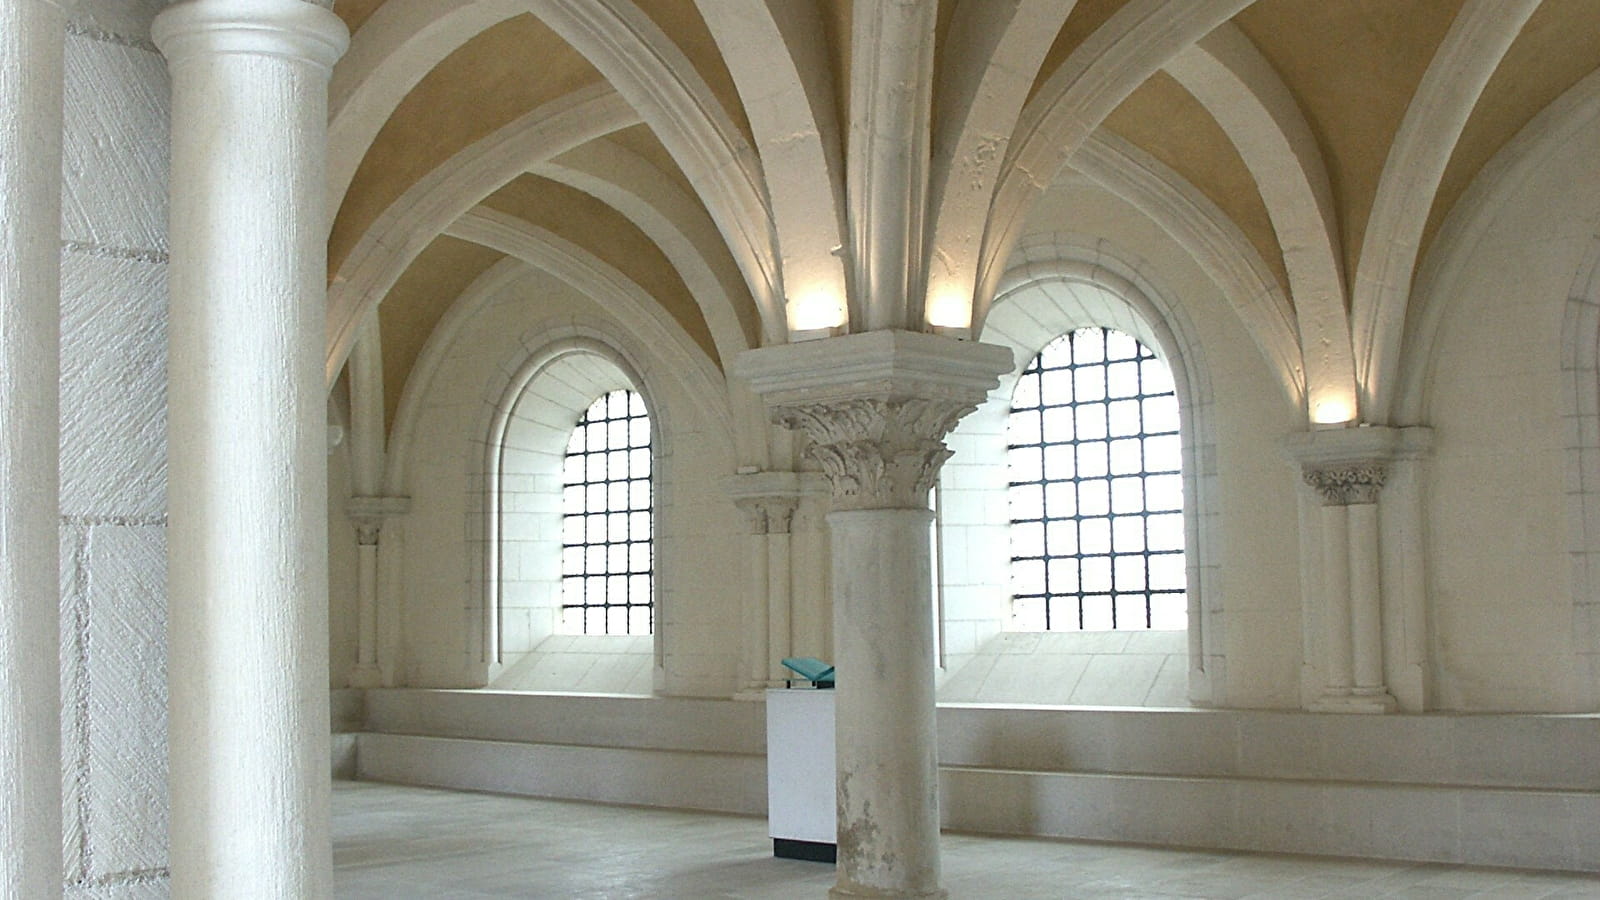 Les artisans fondateurs de l’abbaye Saint-Germain